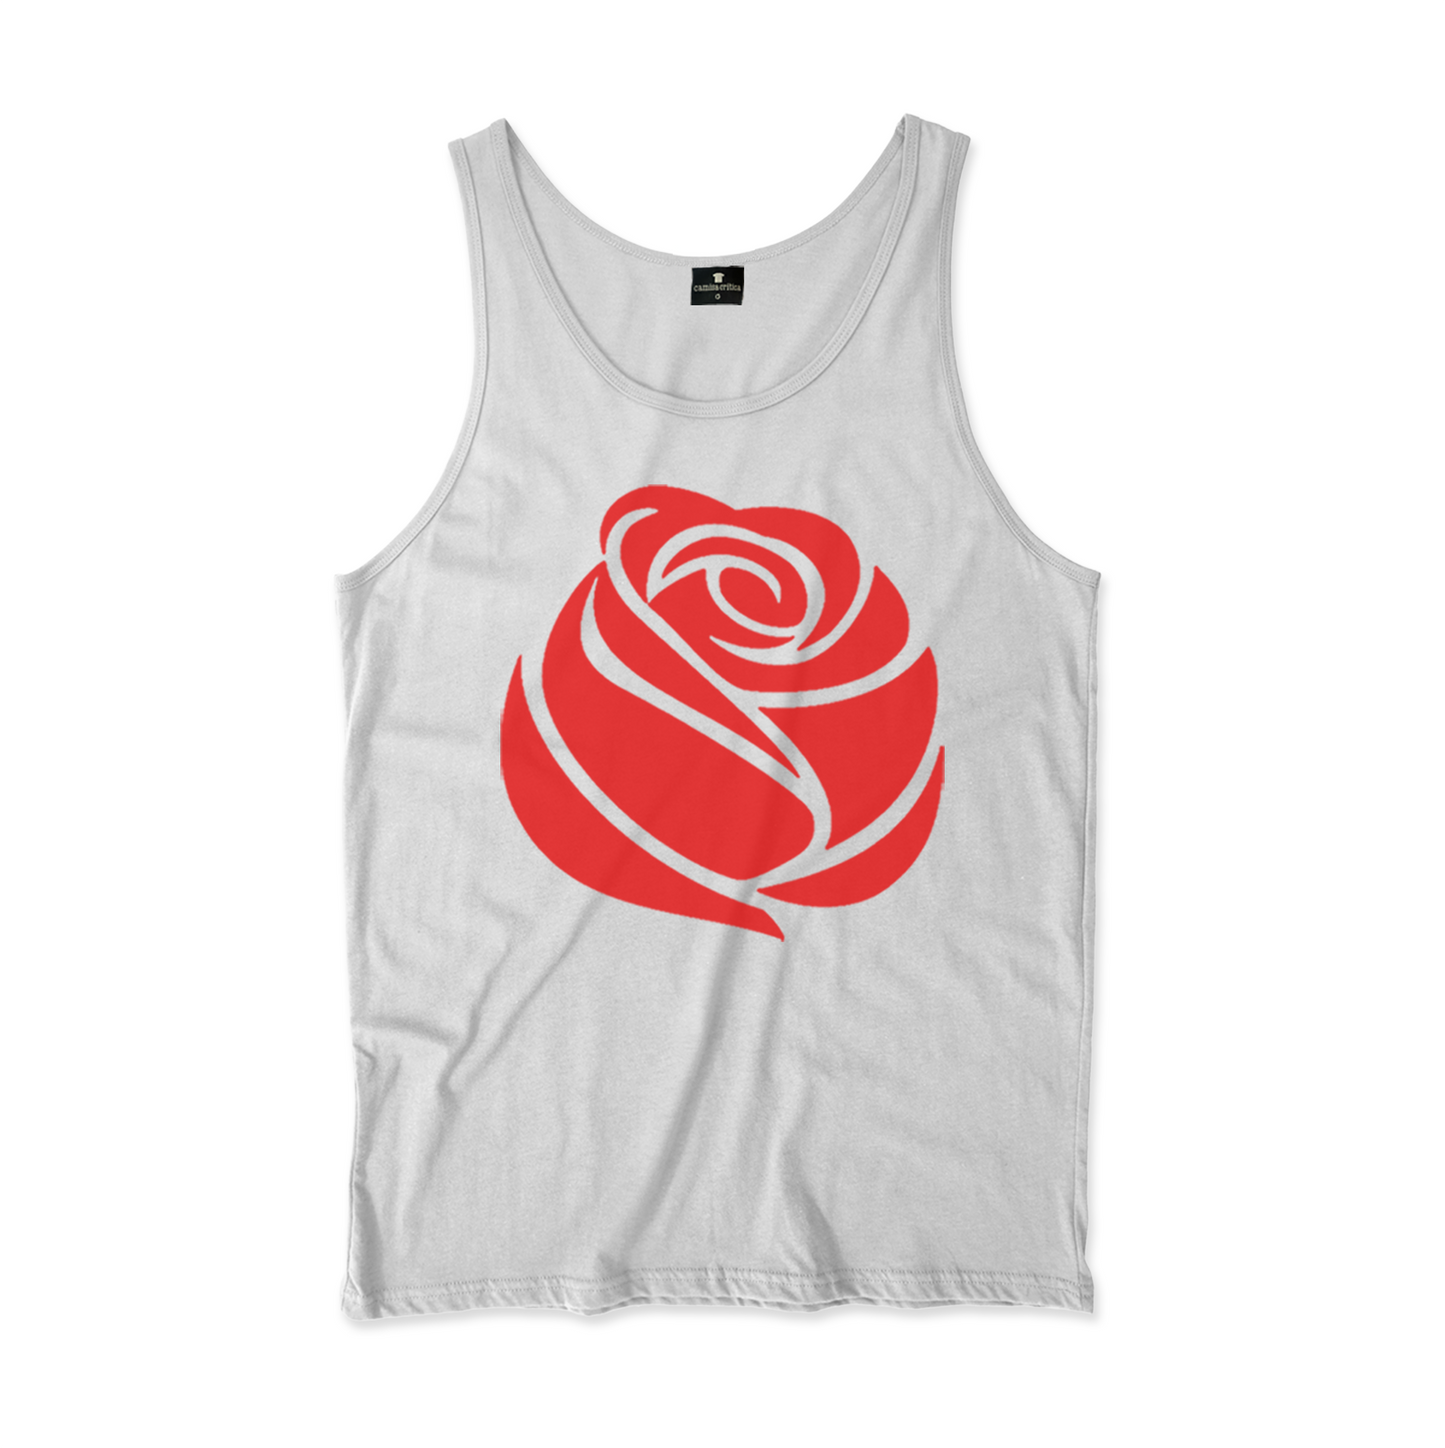 Camiseta Regata. Estampa: desenho de uma rosa vermelha